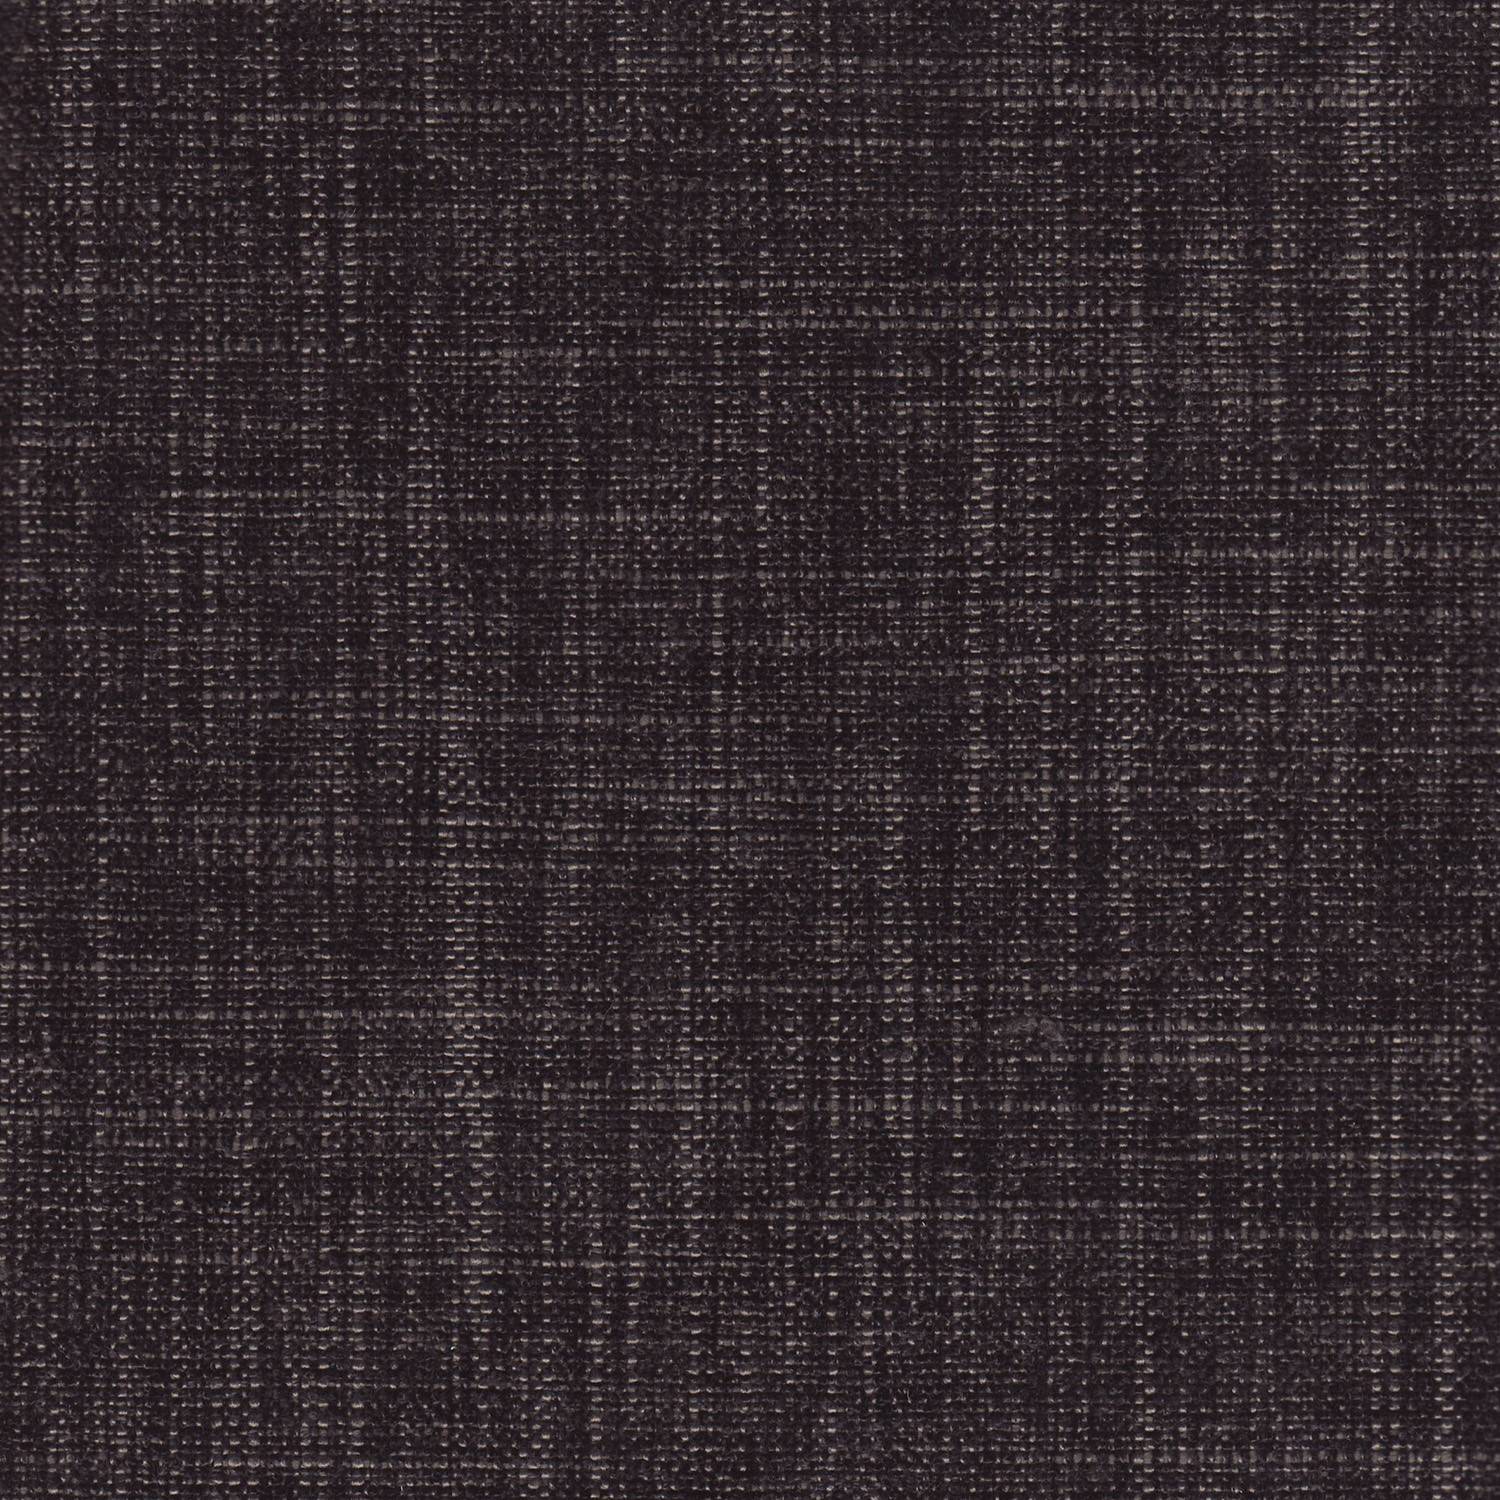 Varci/Black – Fabric